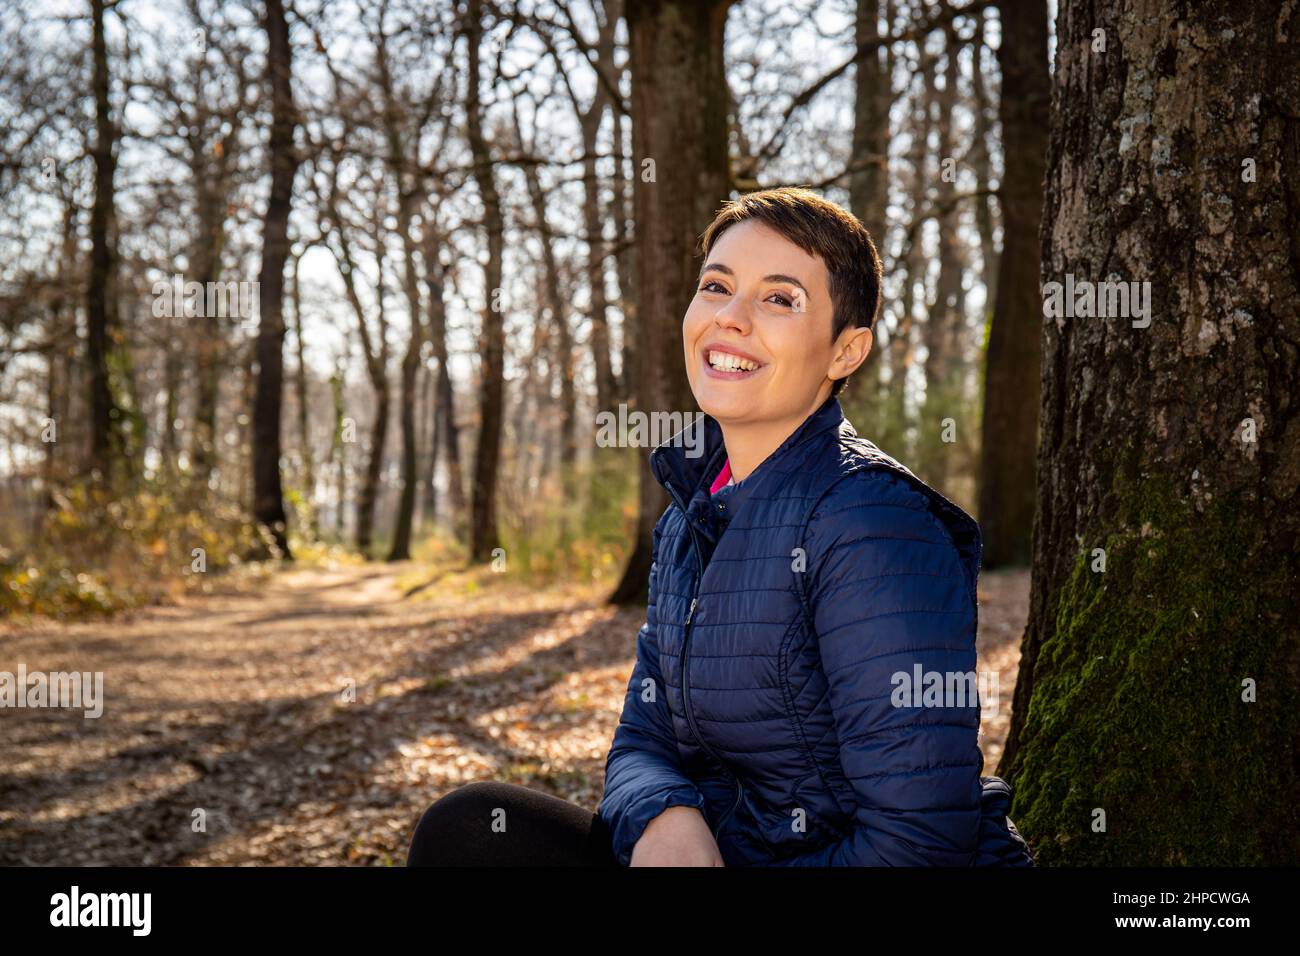 Eine junge lächelnde Frau sitzt am Fuße einer Eiche im Wald. Schöne Frau ruht sich nach einem Spaziergang im Park aus. Reise- und Outdoor-Konzept. Stockfoto